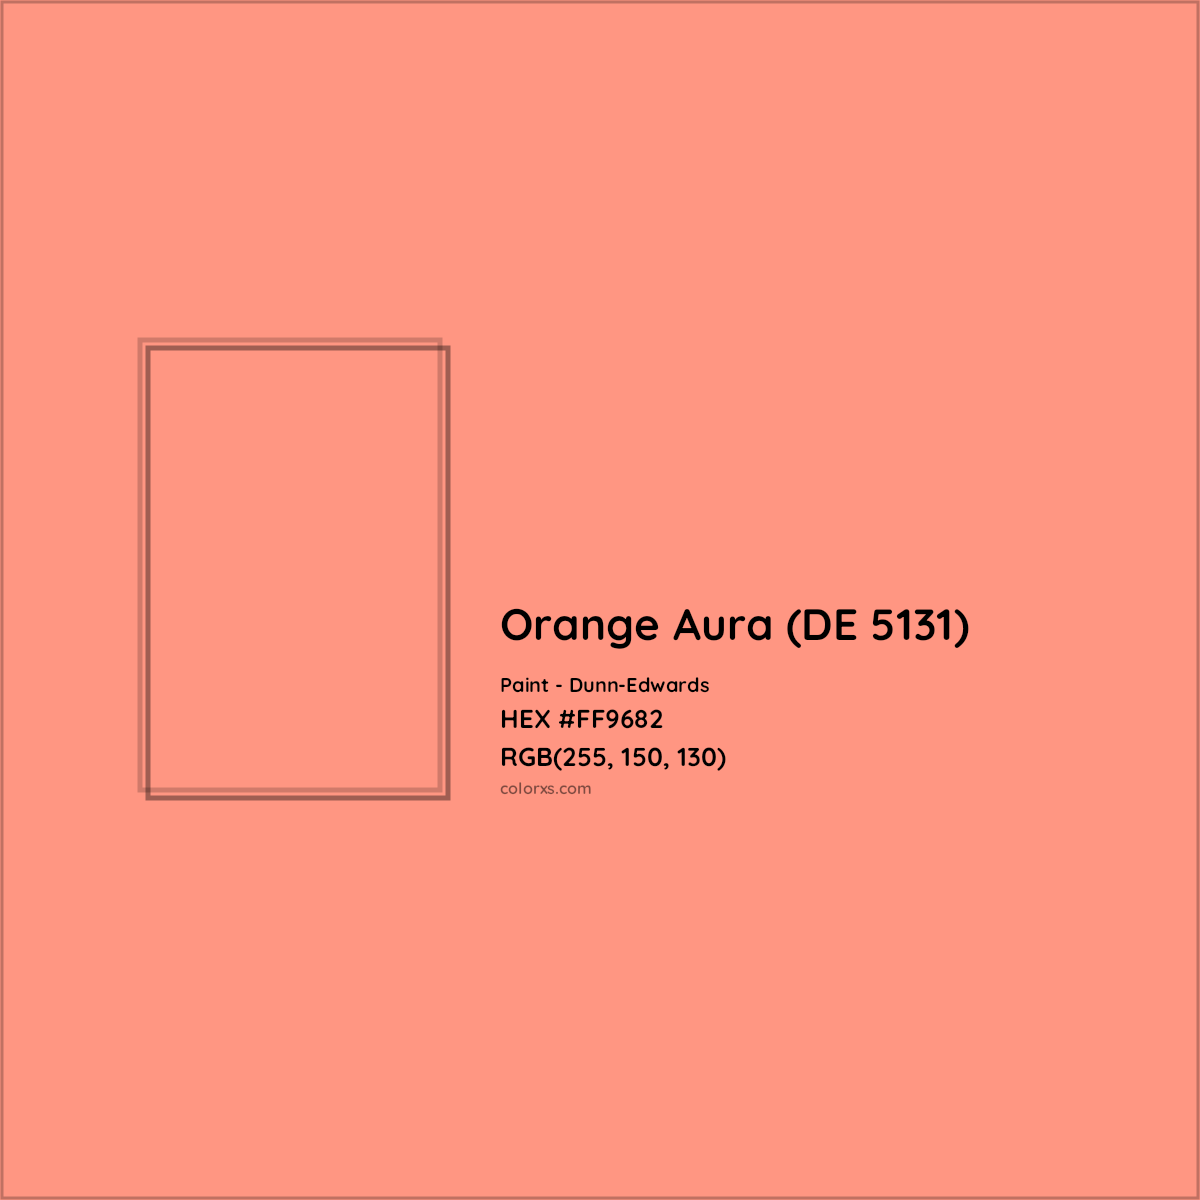 HEX #FF9682 Orange Aura (DE 5131) Paint Dunn-Edwards - Color Code